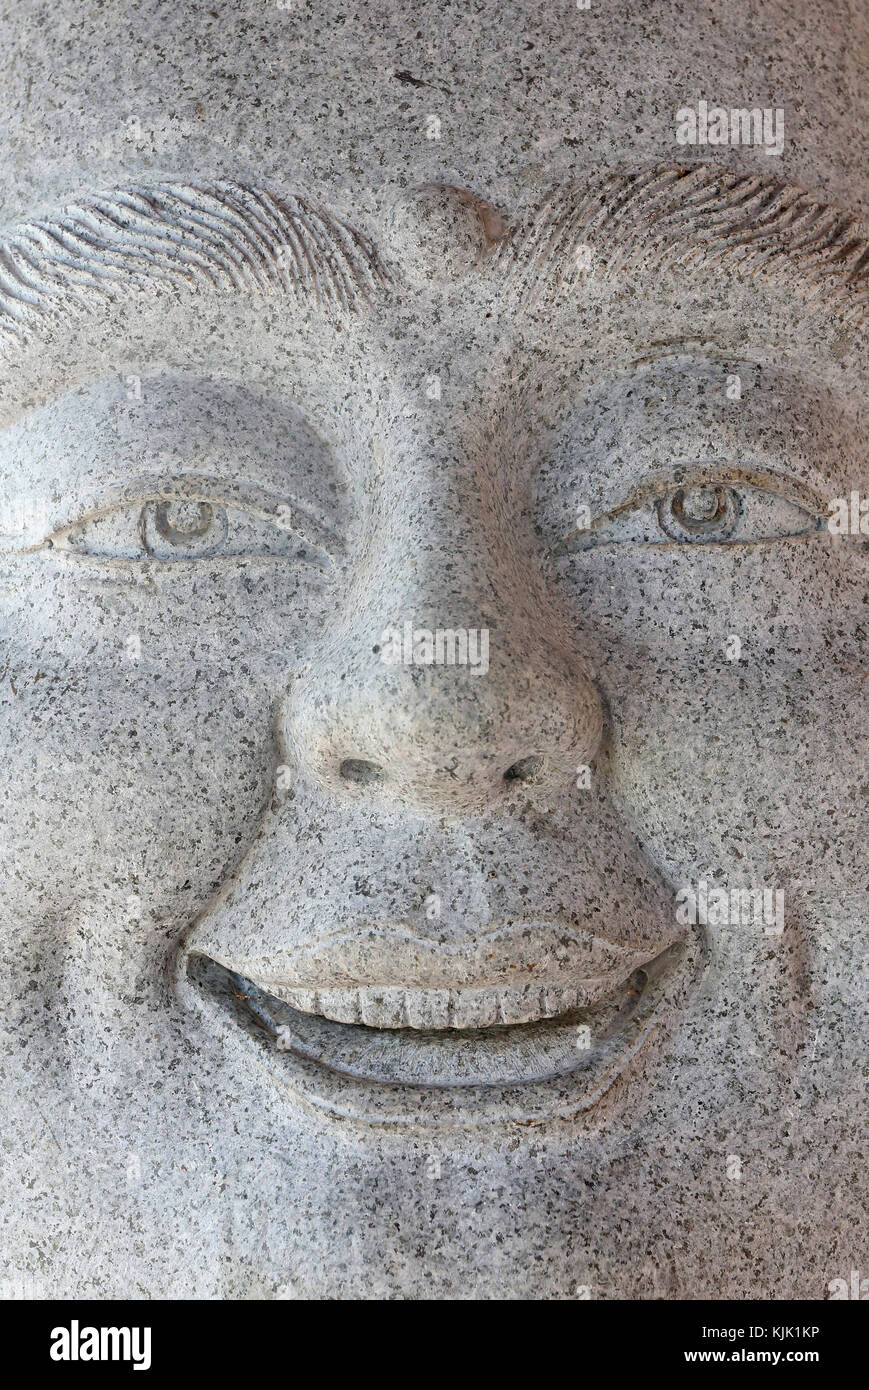 Chua Thien Lam Gehen buddhistische Pagode. Smiling Buddha - Chinesische Gott Glück, Reichtum und Glück. Statue. Thay Ninh. Vietnam. Stockfoto